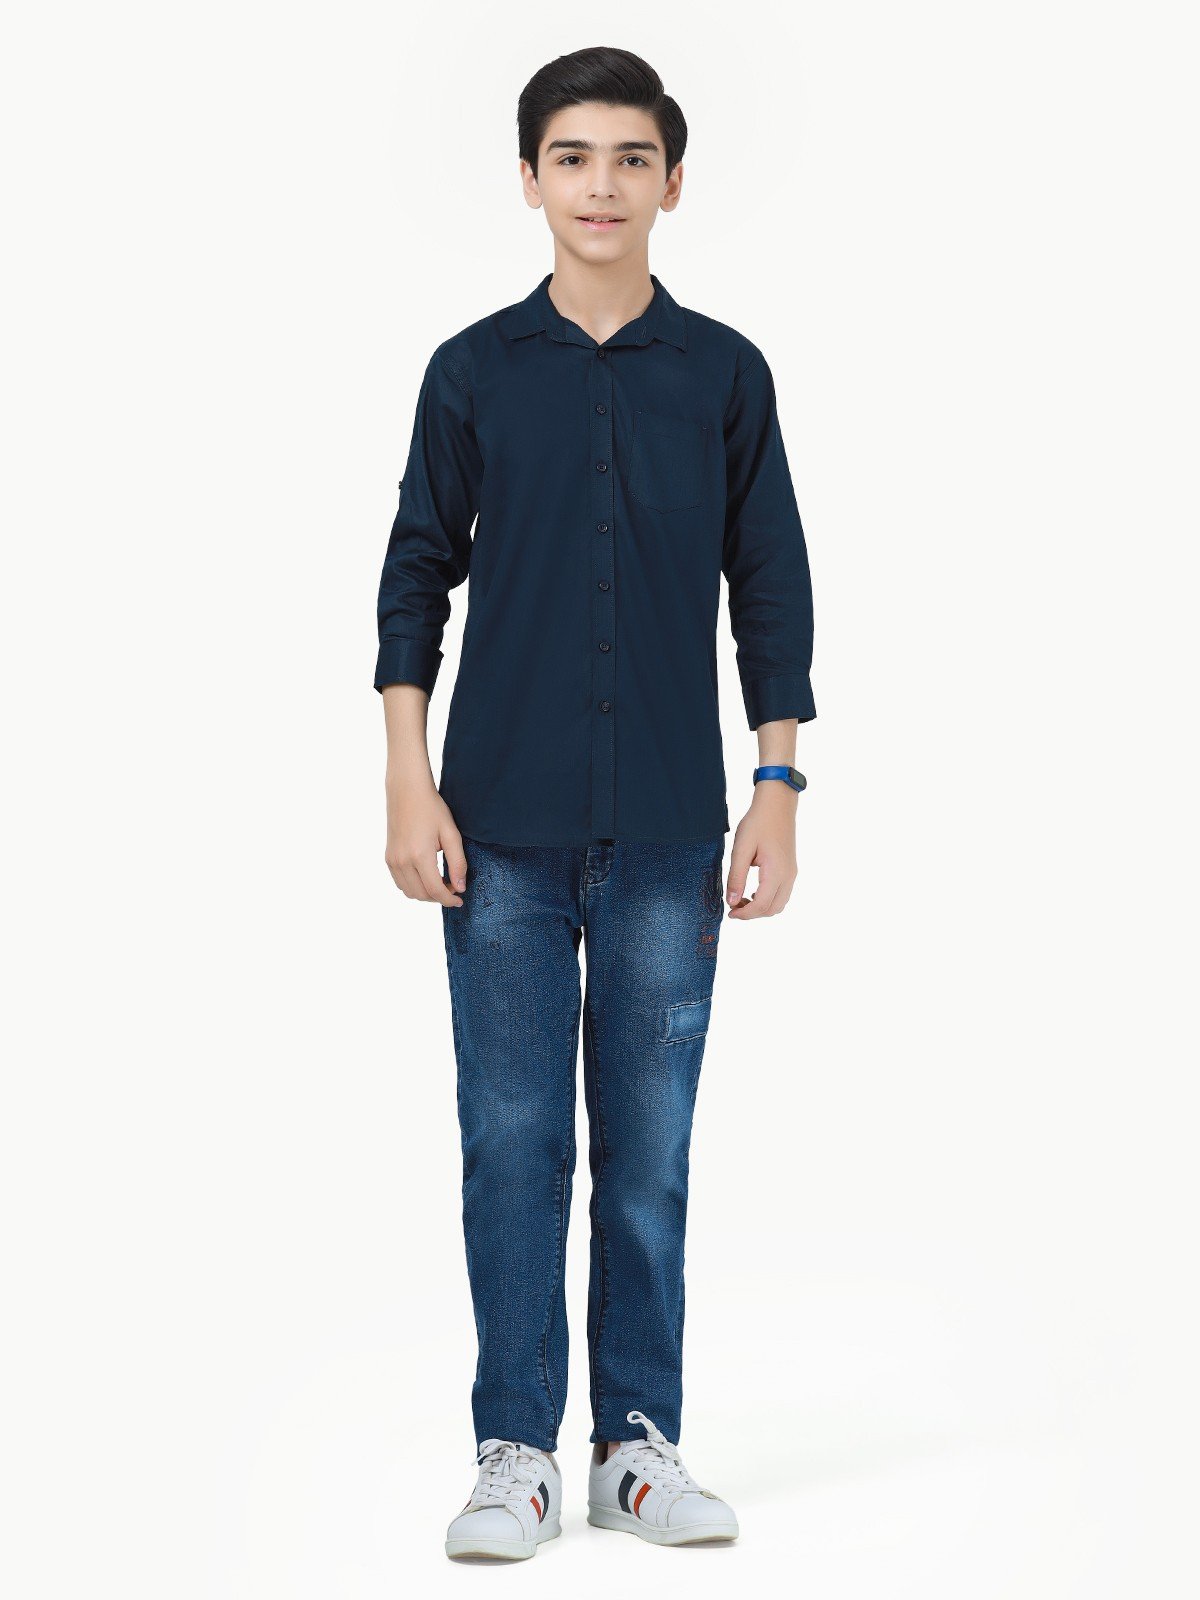 Boy's Navy Blue Shirt - EBTS23-27414